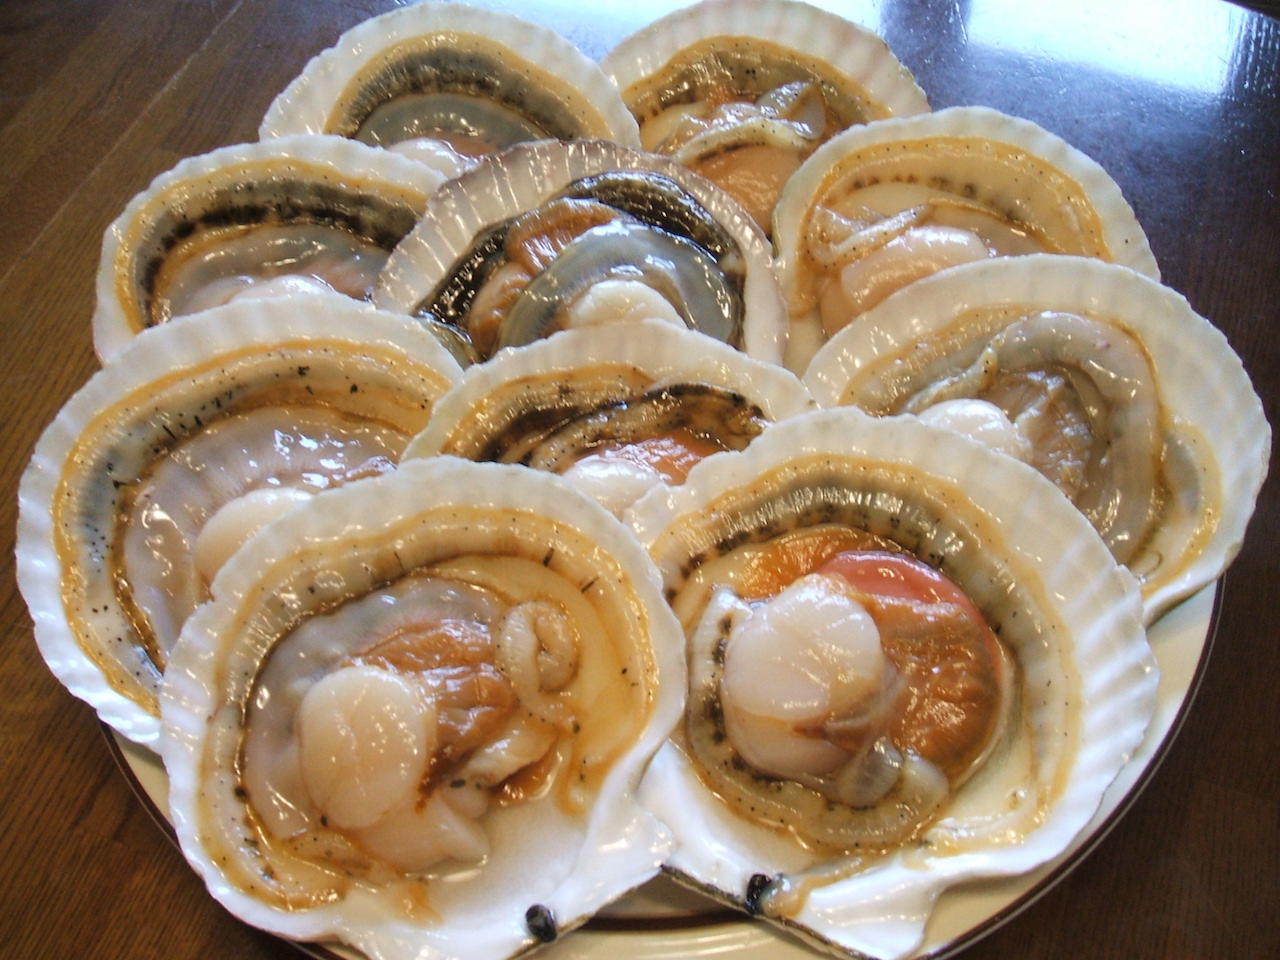 ラムサール条約登録地直送　生食可　採れたて殻牡蠣6kg  全国送料無料！